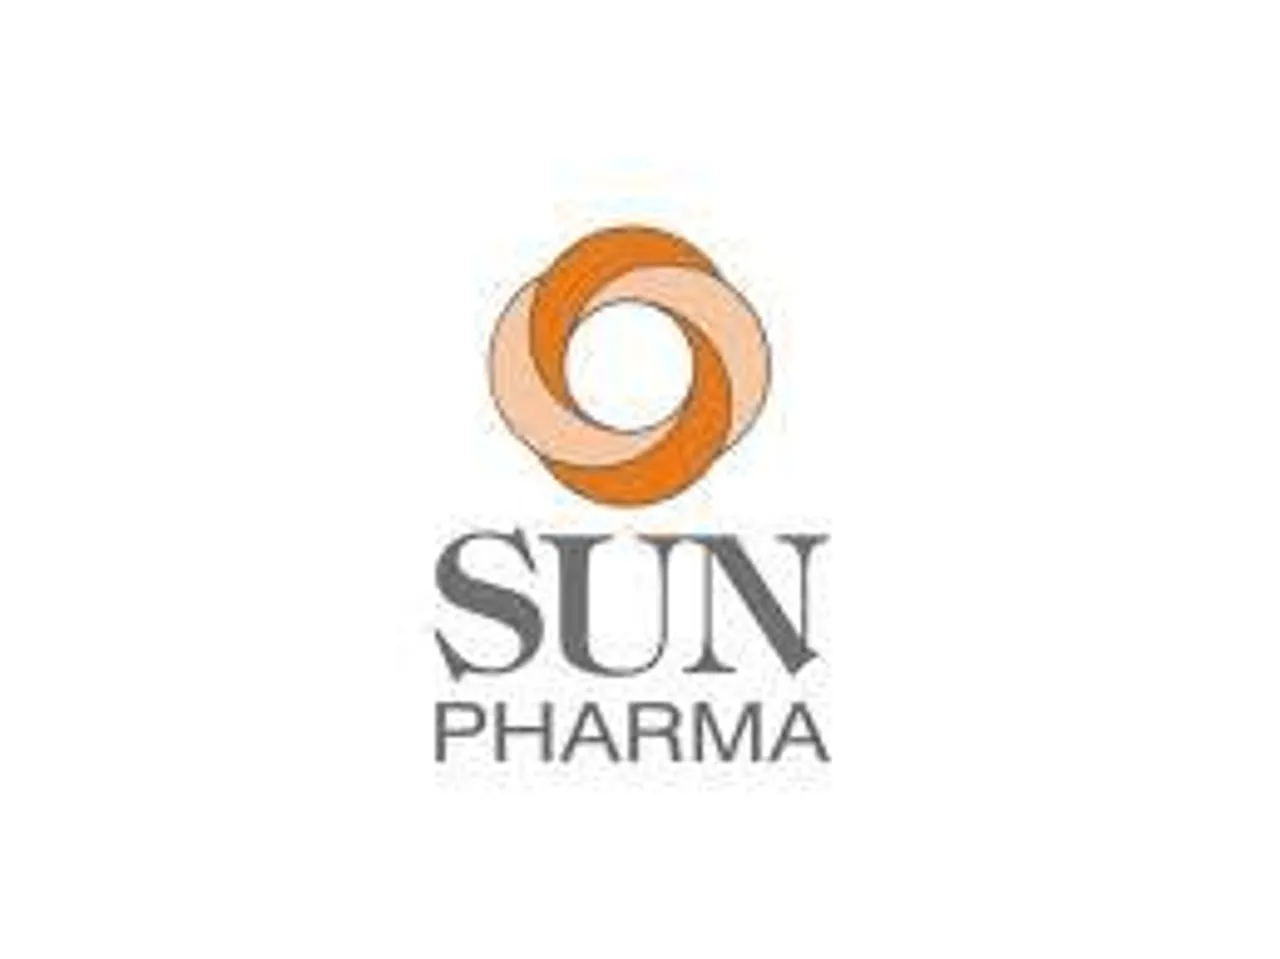 Sun Pharma: Got DCGI OK for Molnupiravir drug in India